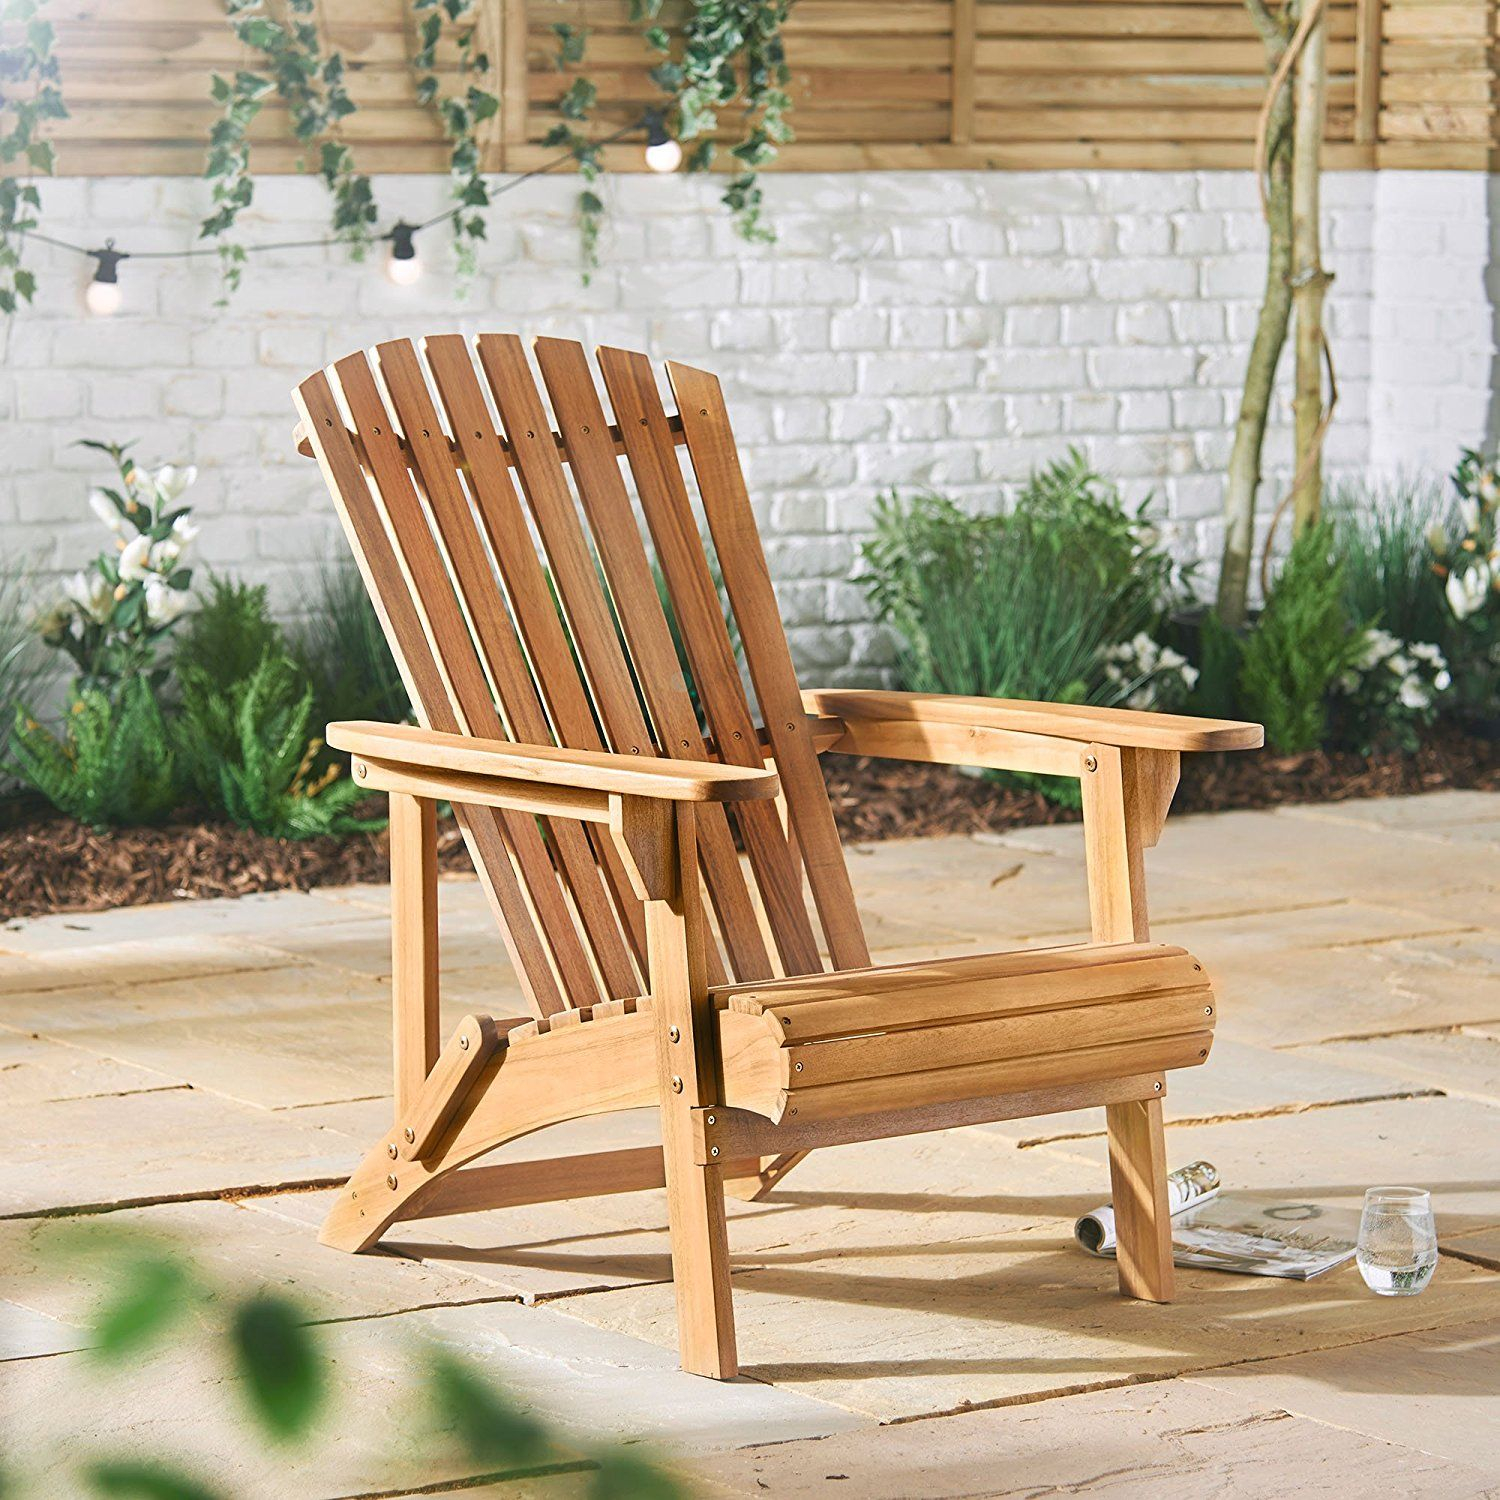 Vonhaus Adirondack Chair Outdoor Garden Furniture Made regarding dimensions 1500 X 1500